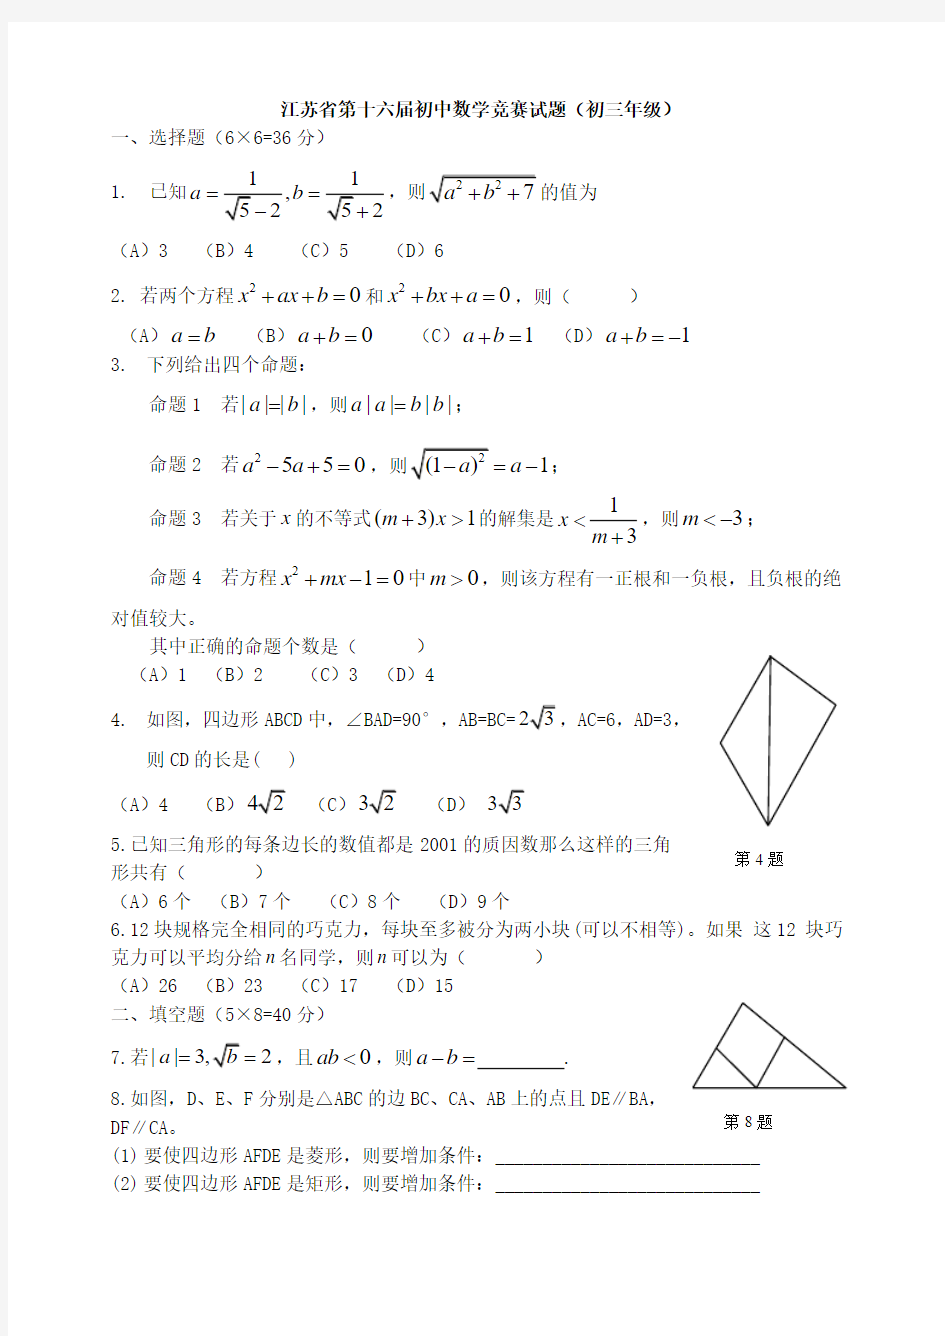 江苏省第十六届初中数学竞赛试题(初三年级)及答案